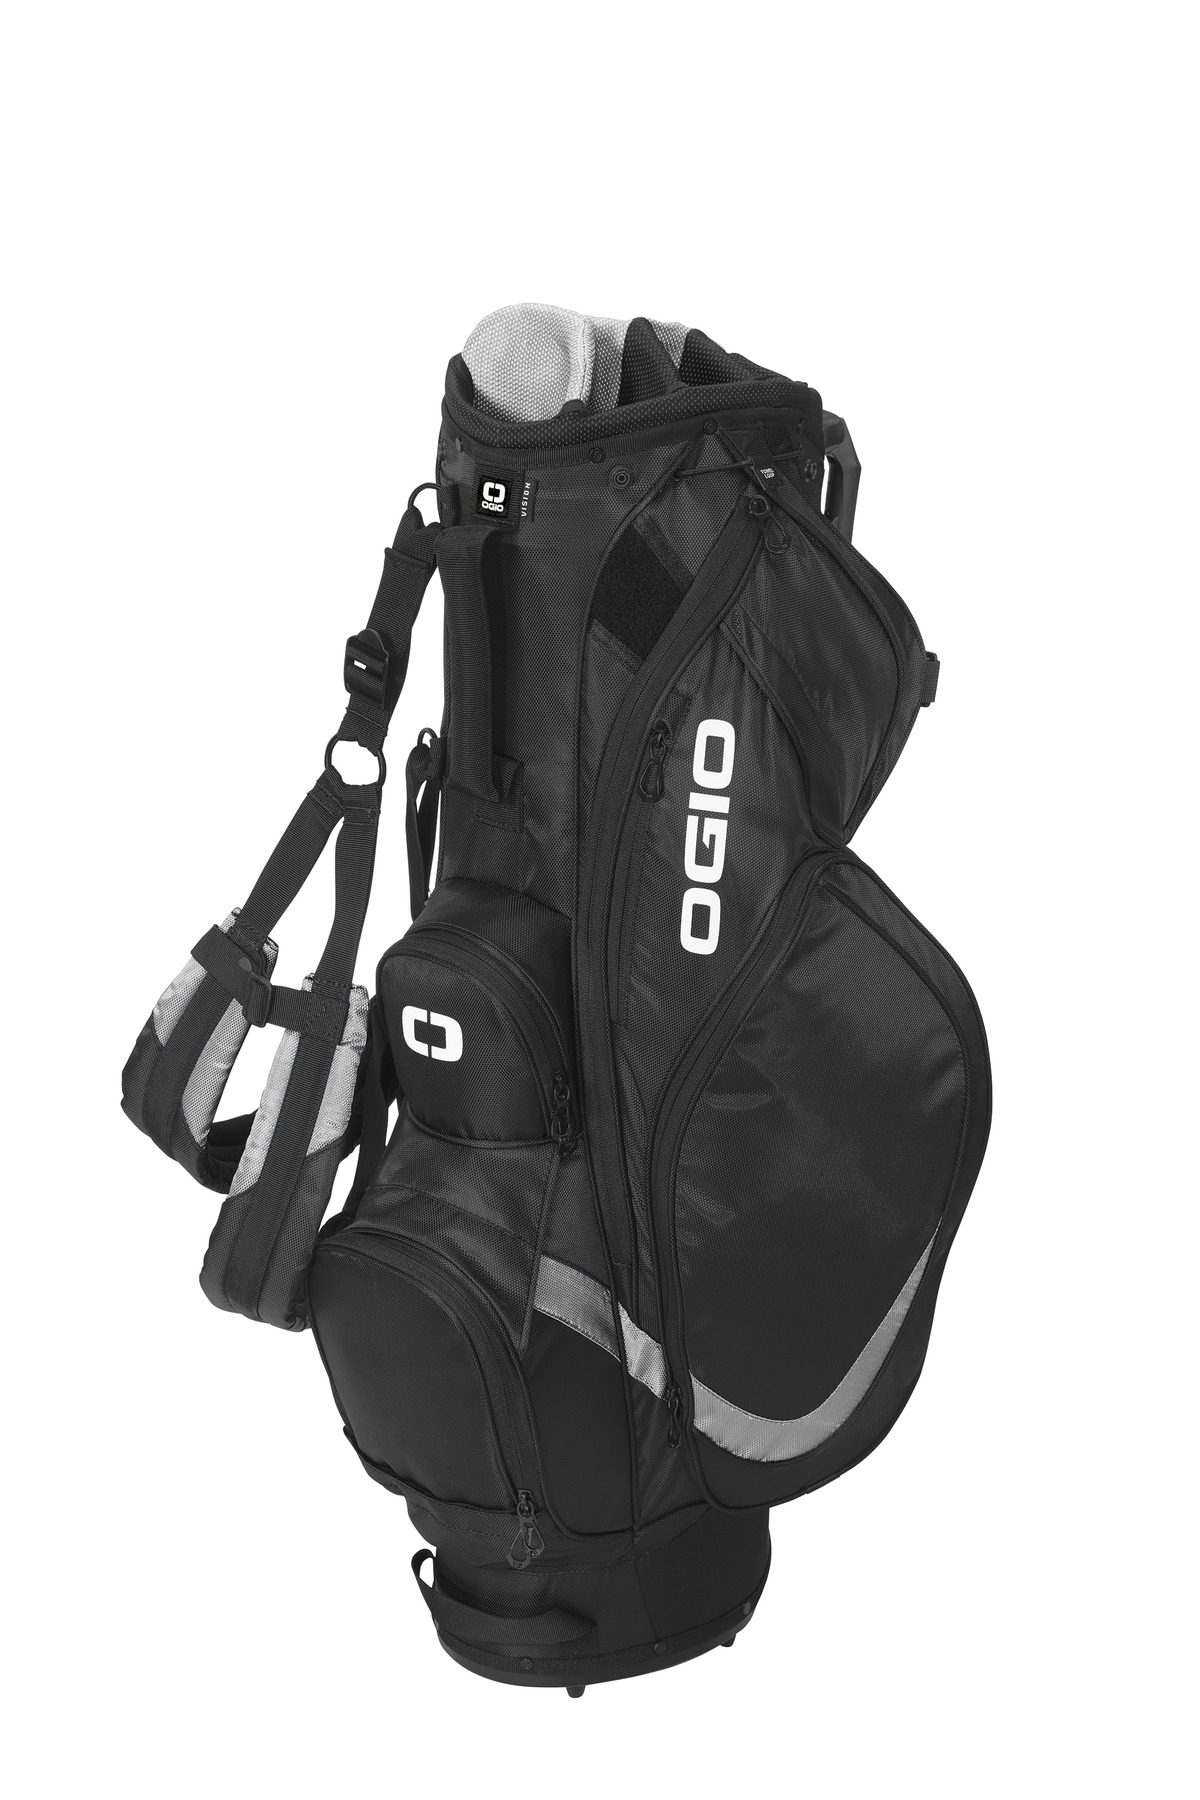 OGIO Vision 20 Golf Bag-OGIO